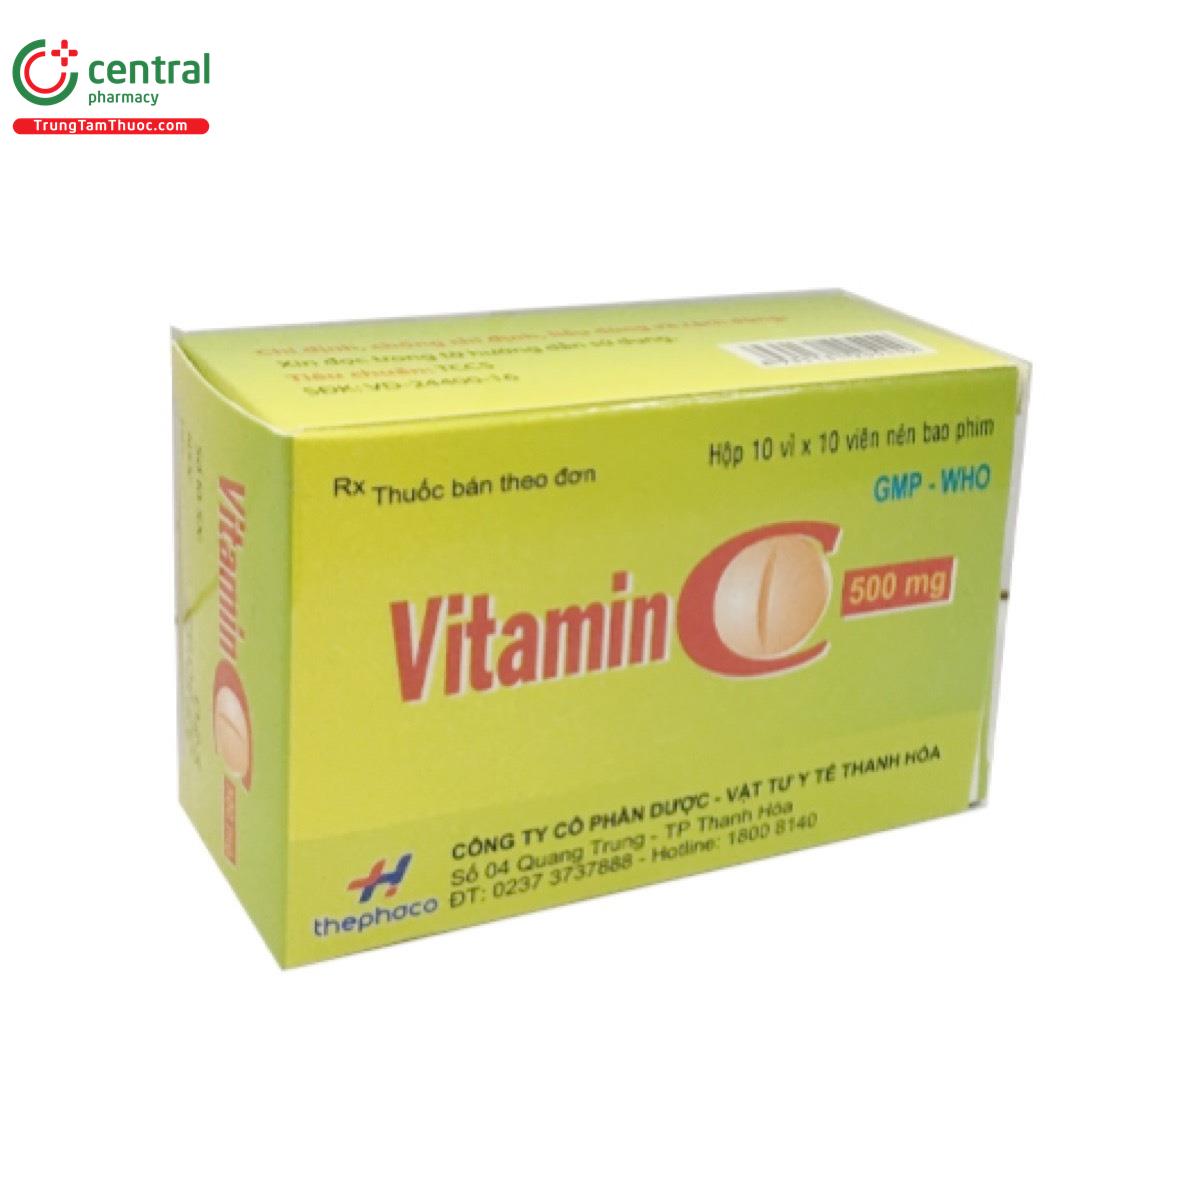 vitaminc 500mg thephaco 2 S7522